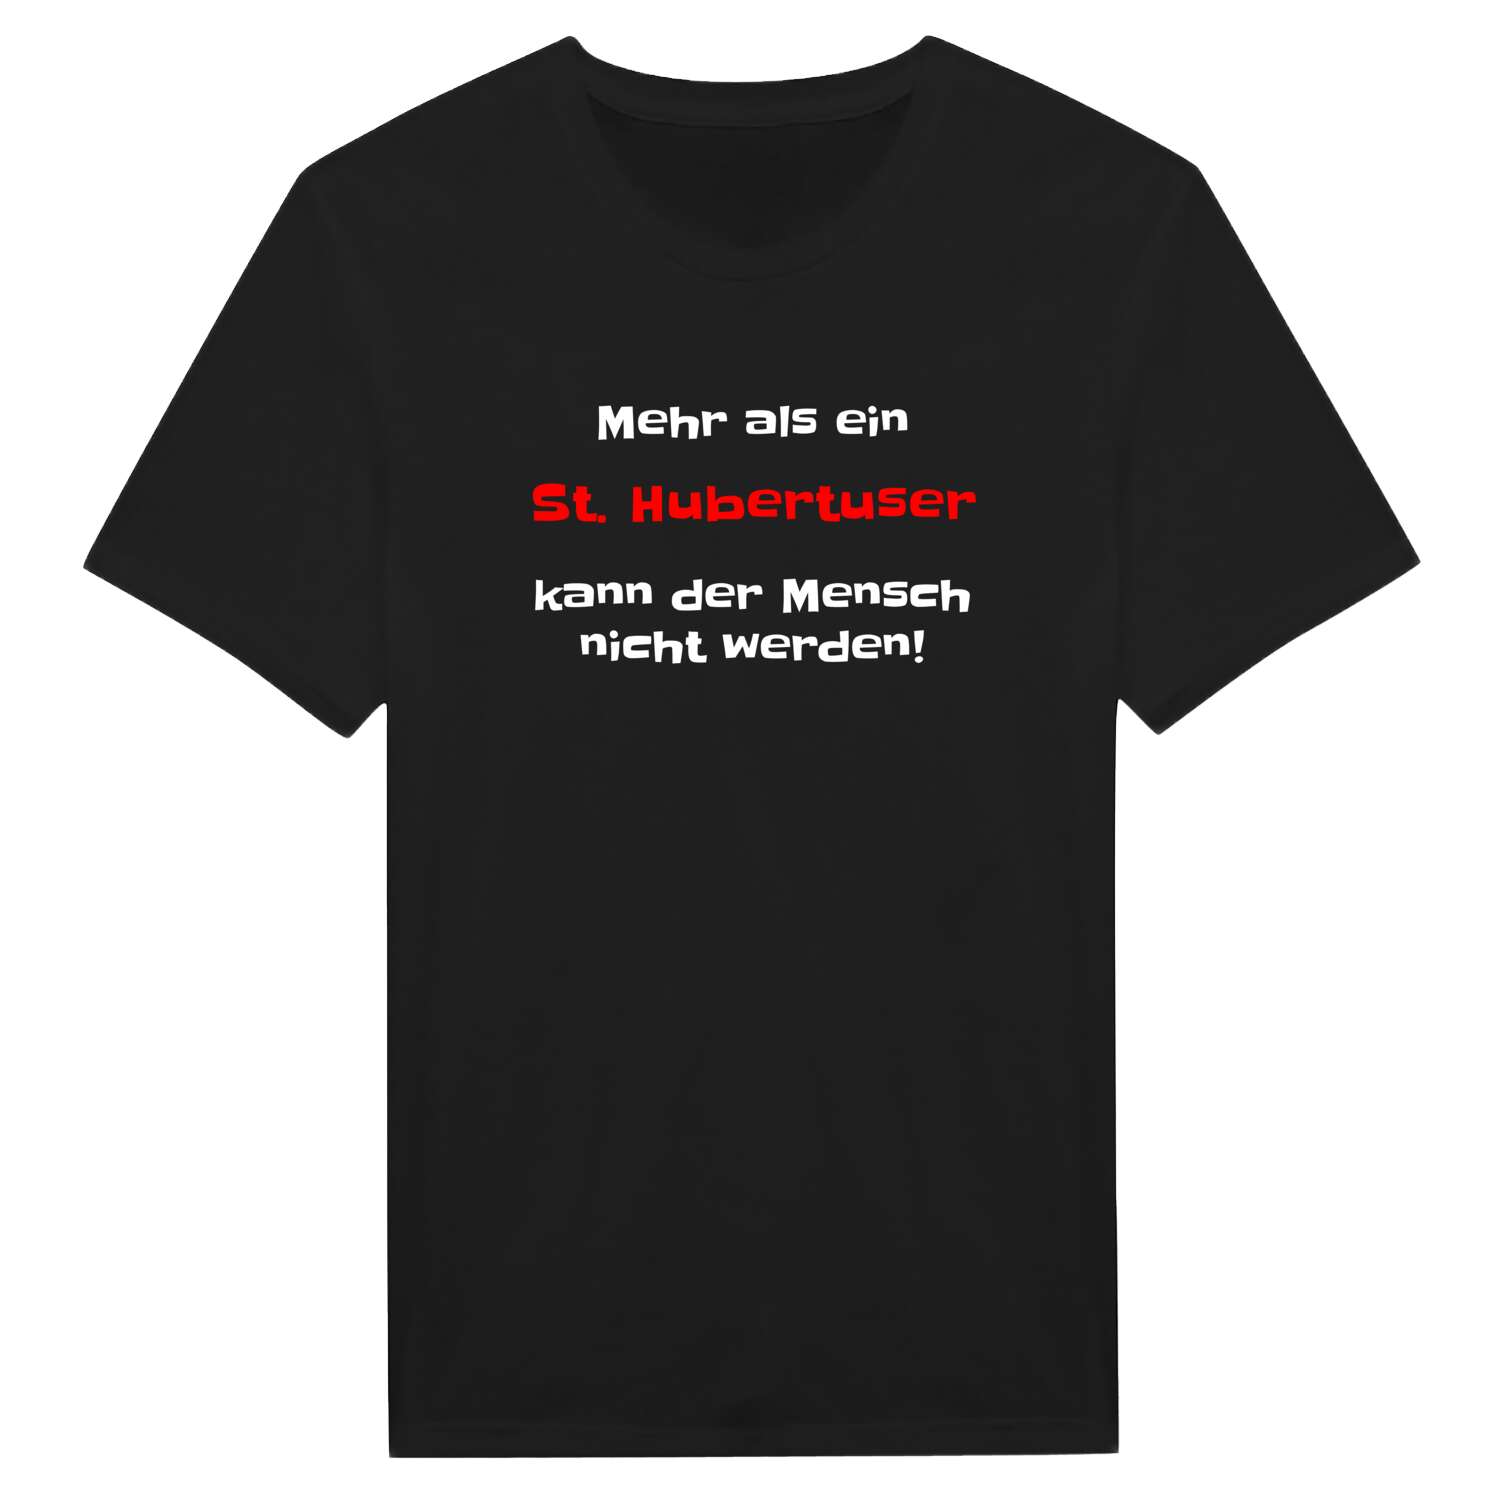 St. Hubertus T-Shirt »Mehr als ein«